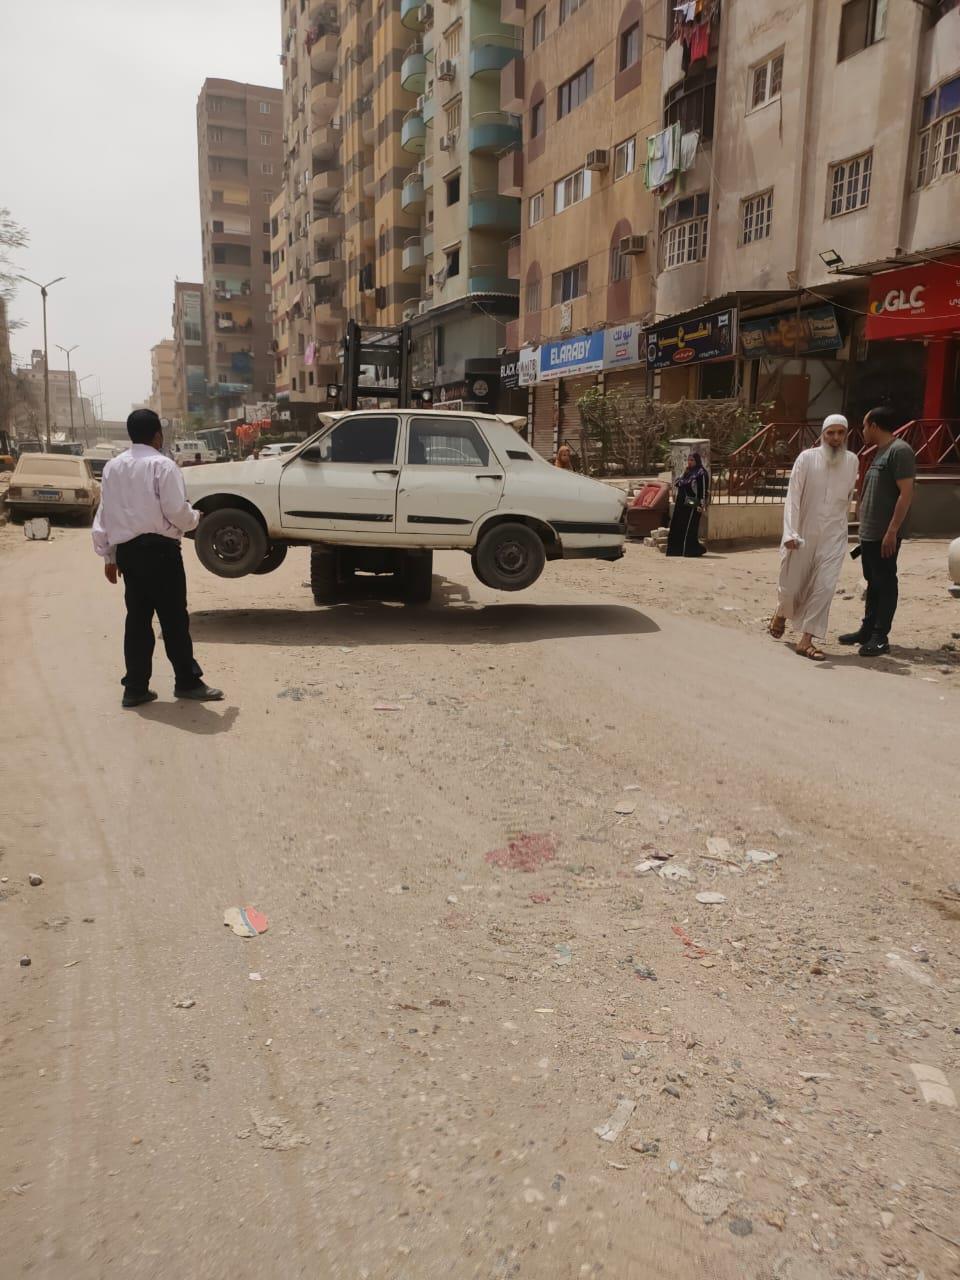  تجريد ونظافة شارع عثمان محرم بالطالبية